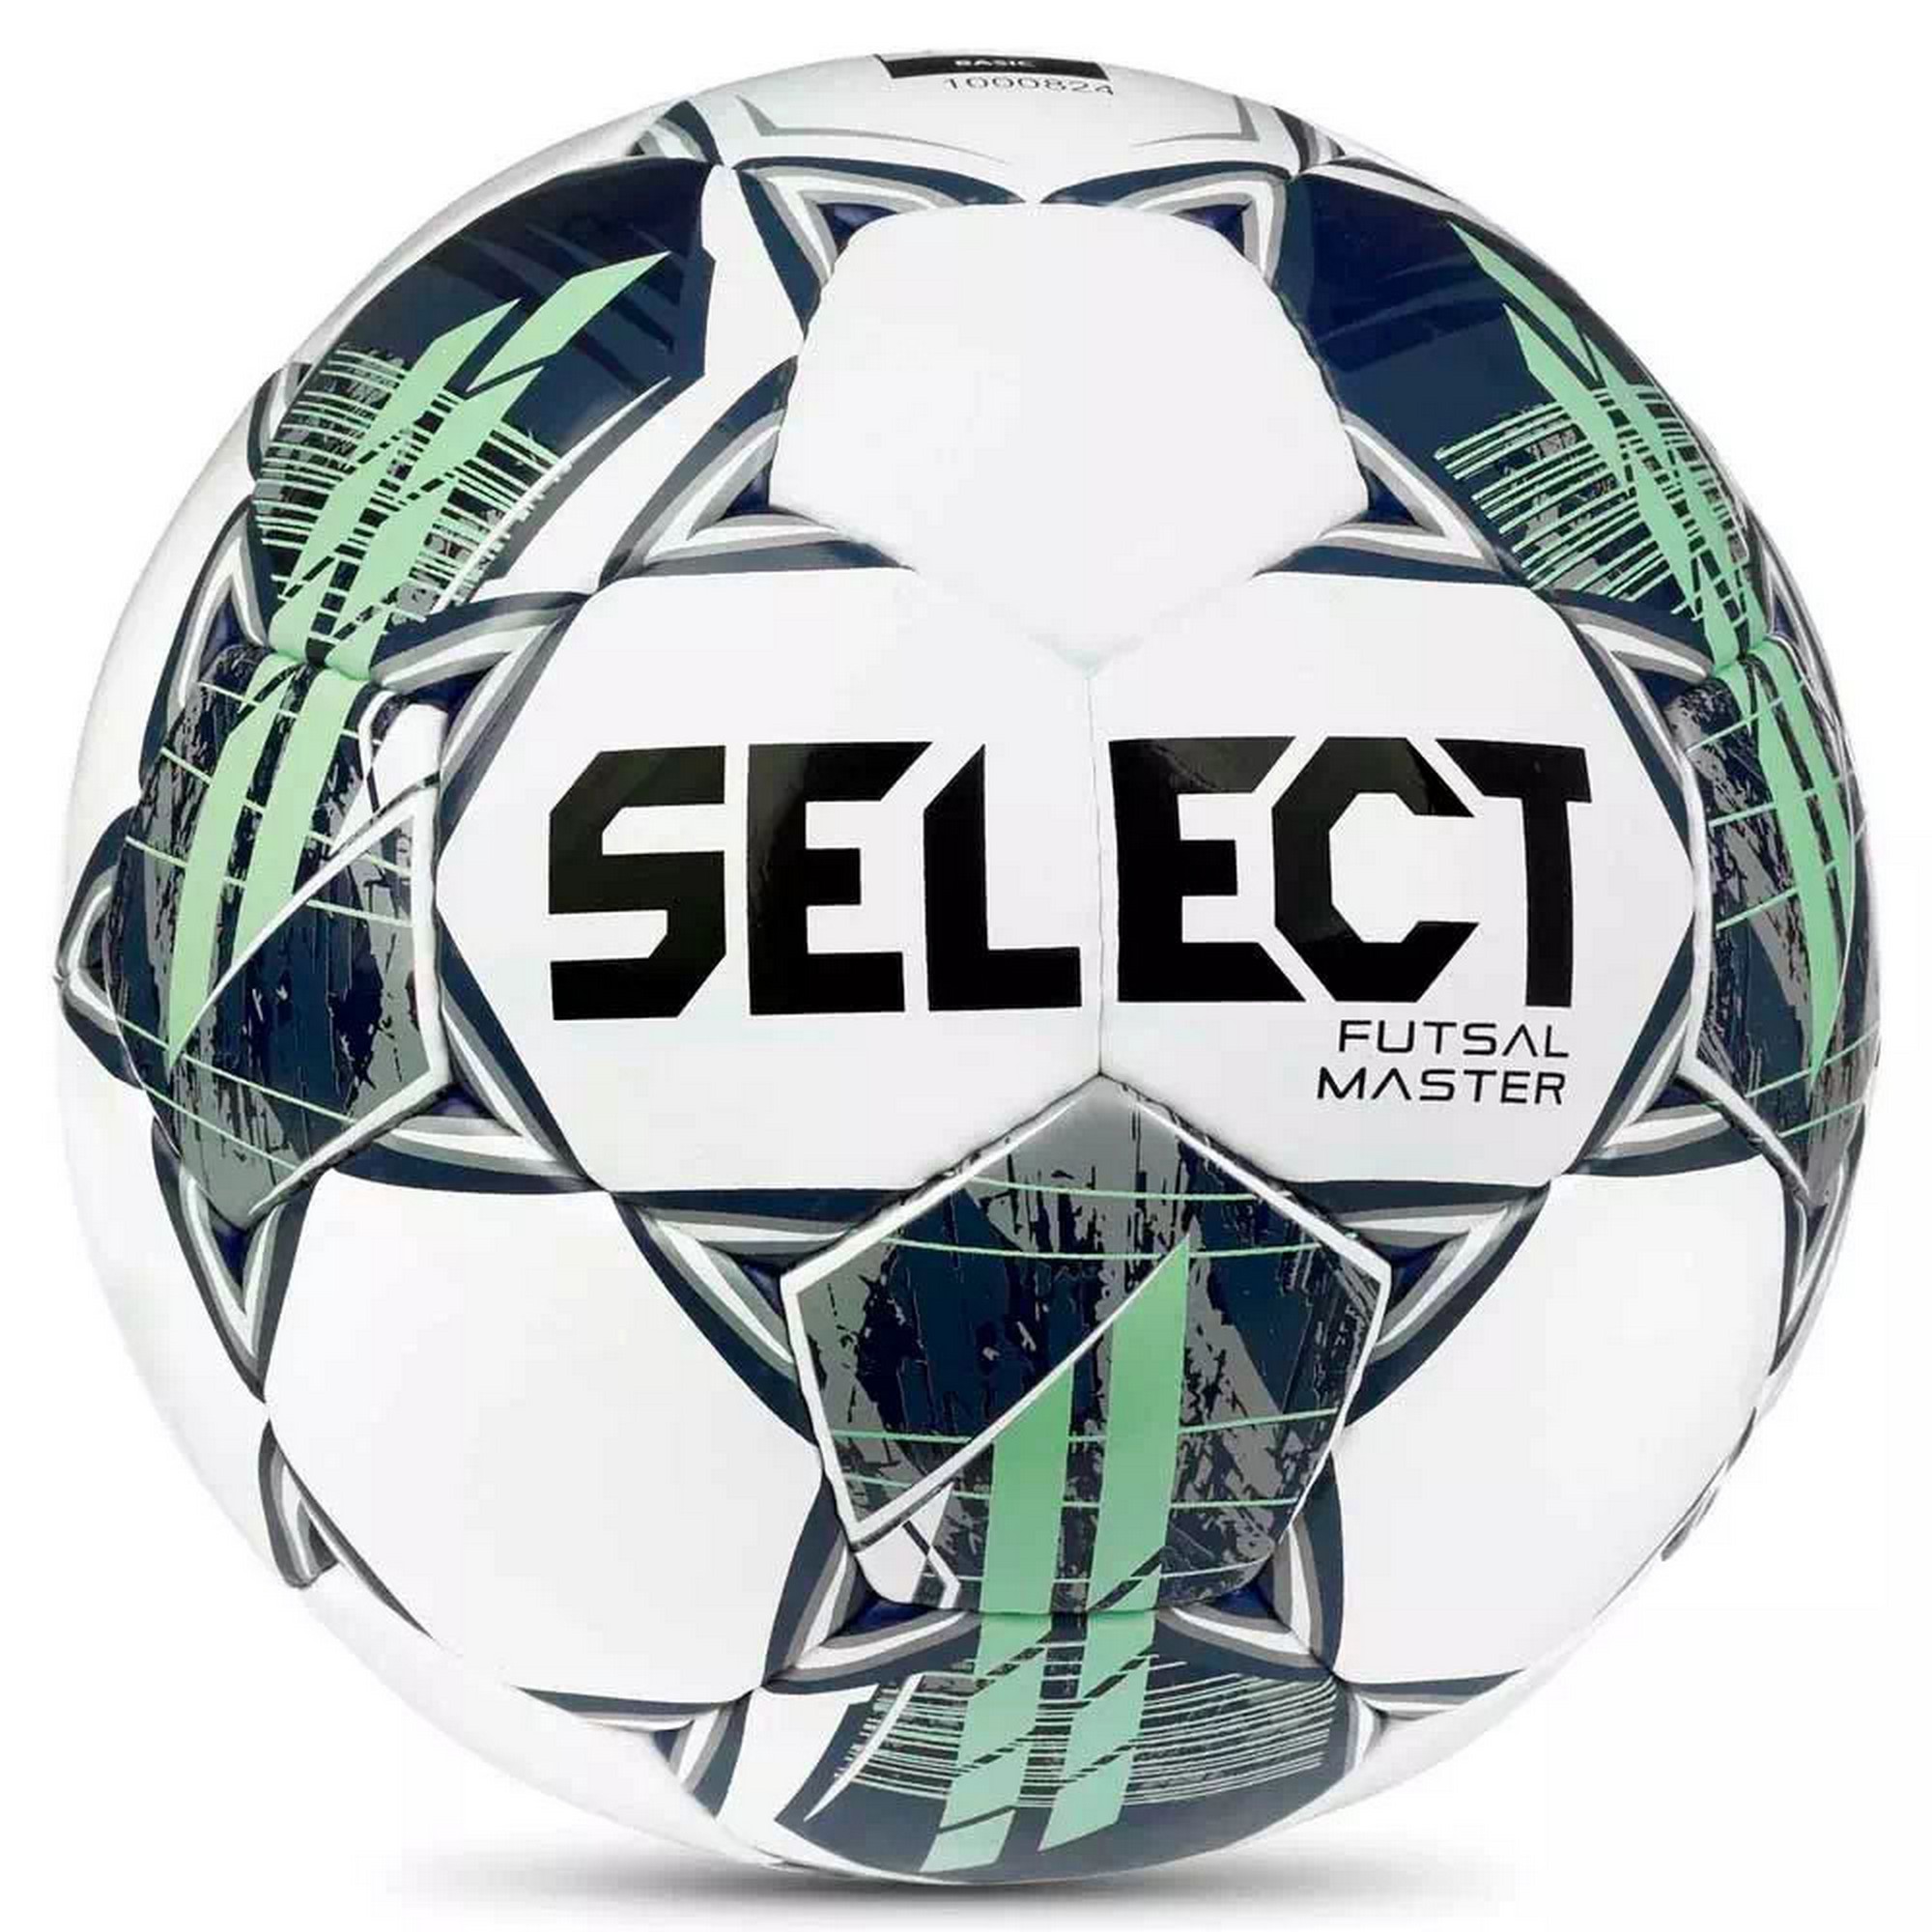   Select Futsal Master Shiny V22 1043460004-004 .4